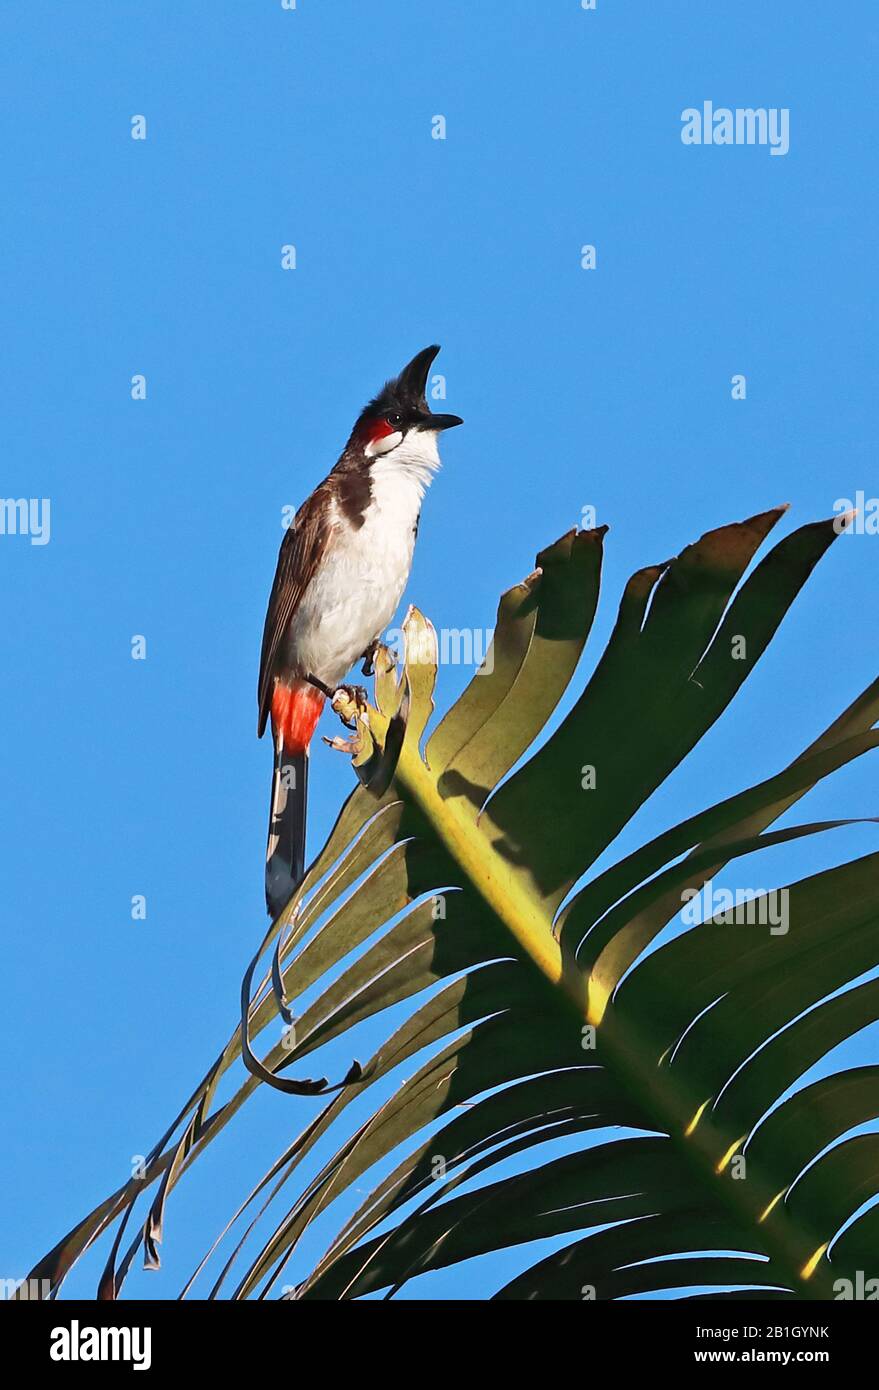 Rot geflüsterter Bulbul (Pycnonotus jocosus) ausgewachsen oben auf dem Blatt, eingeführte Art Mauritius November Stockfoto